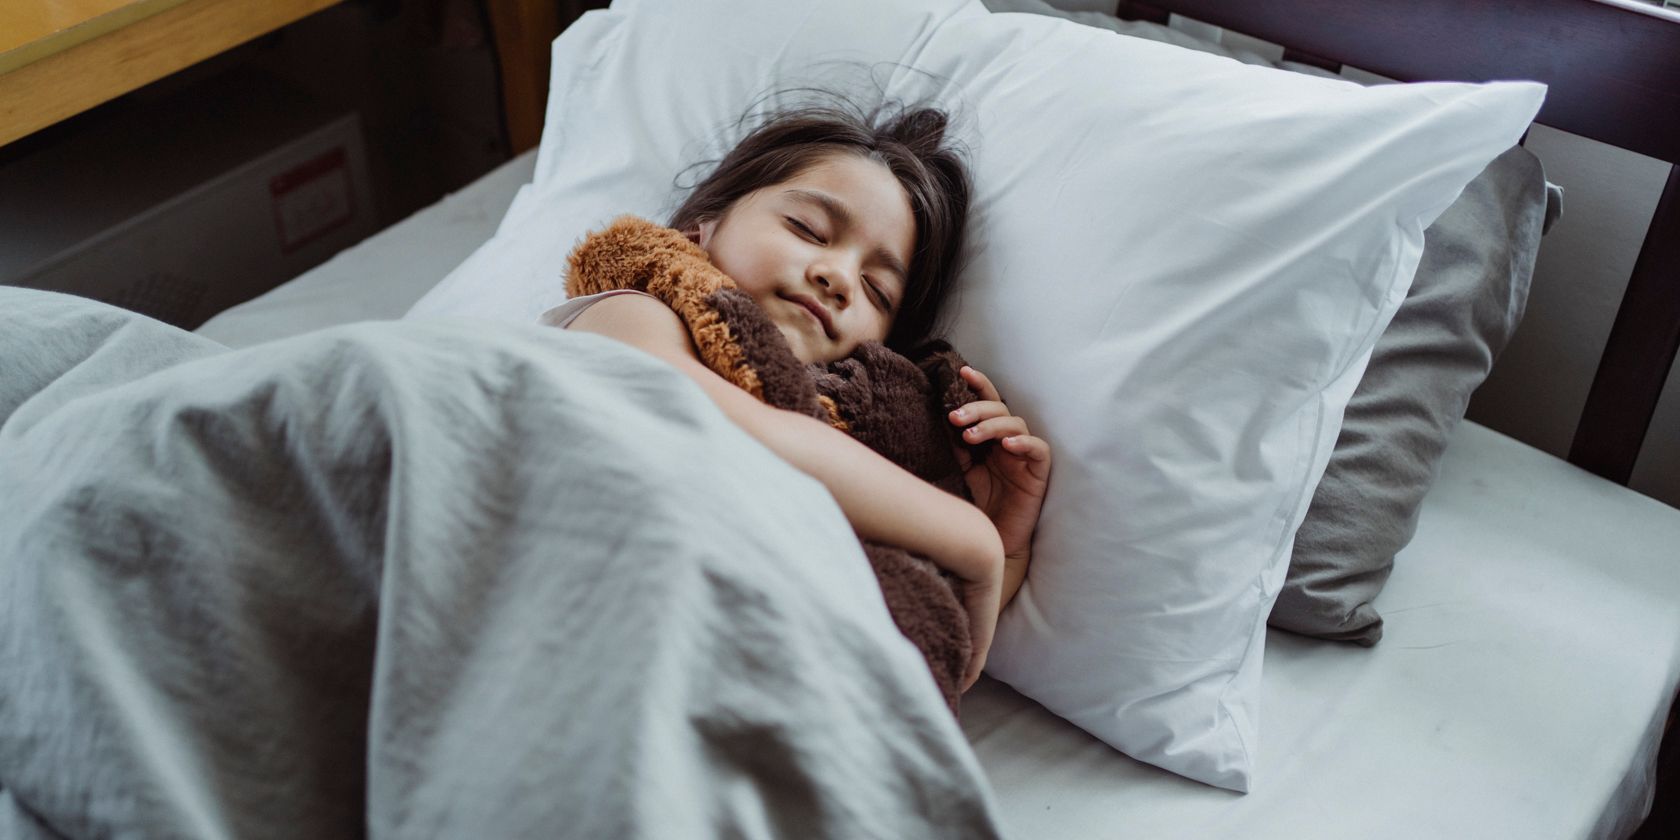 a child asleep in bed cuddling a teddy bear